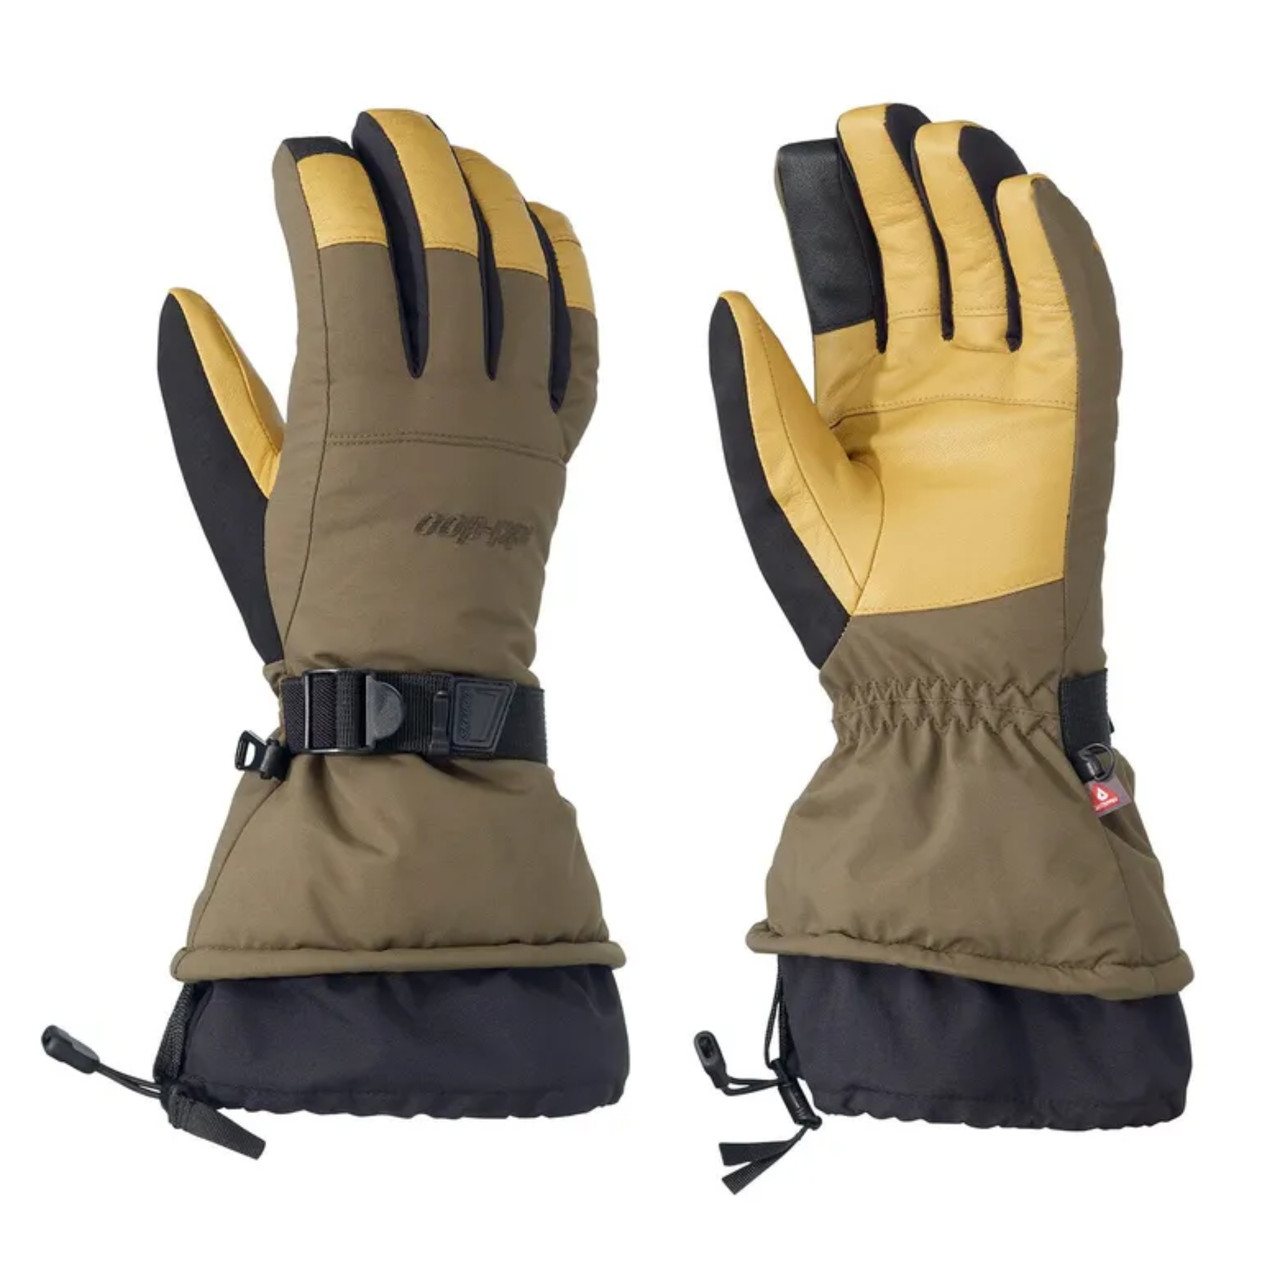 Ski-Doo New OEM Unisex Large Woolly Gloves Waterproof, 4463270977